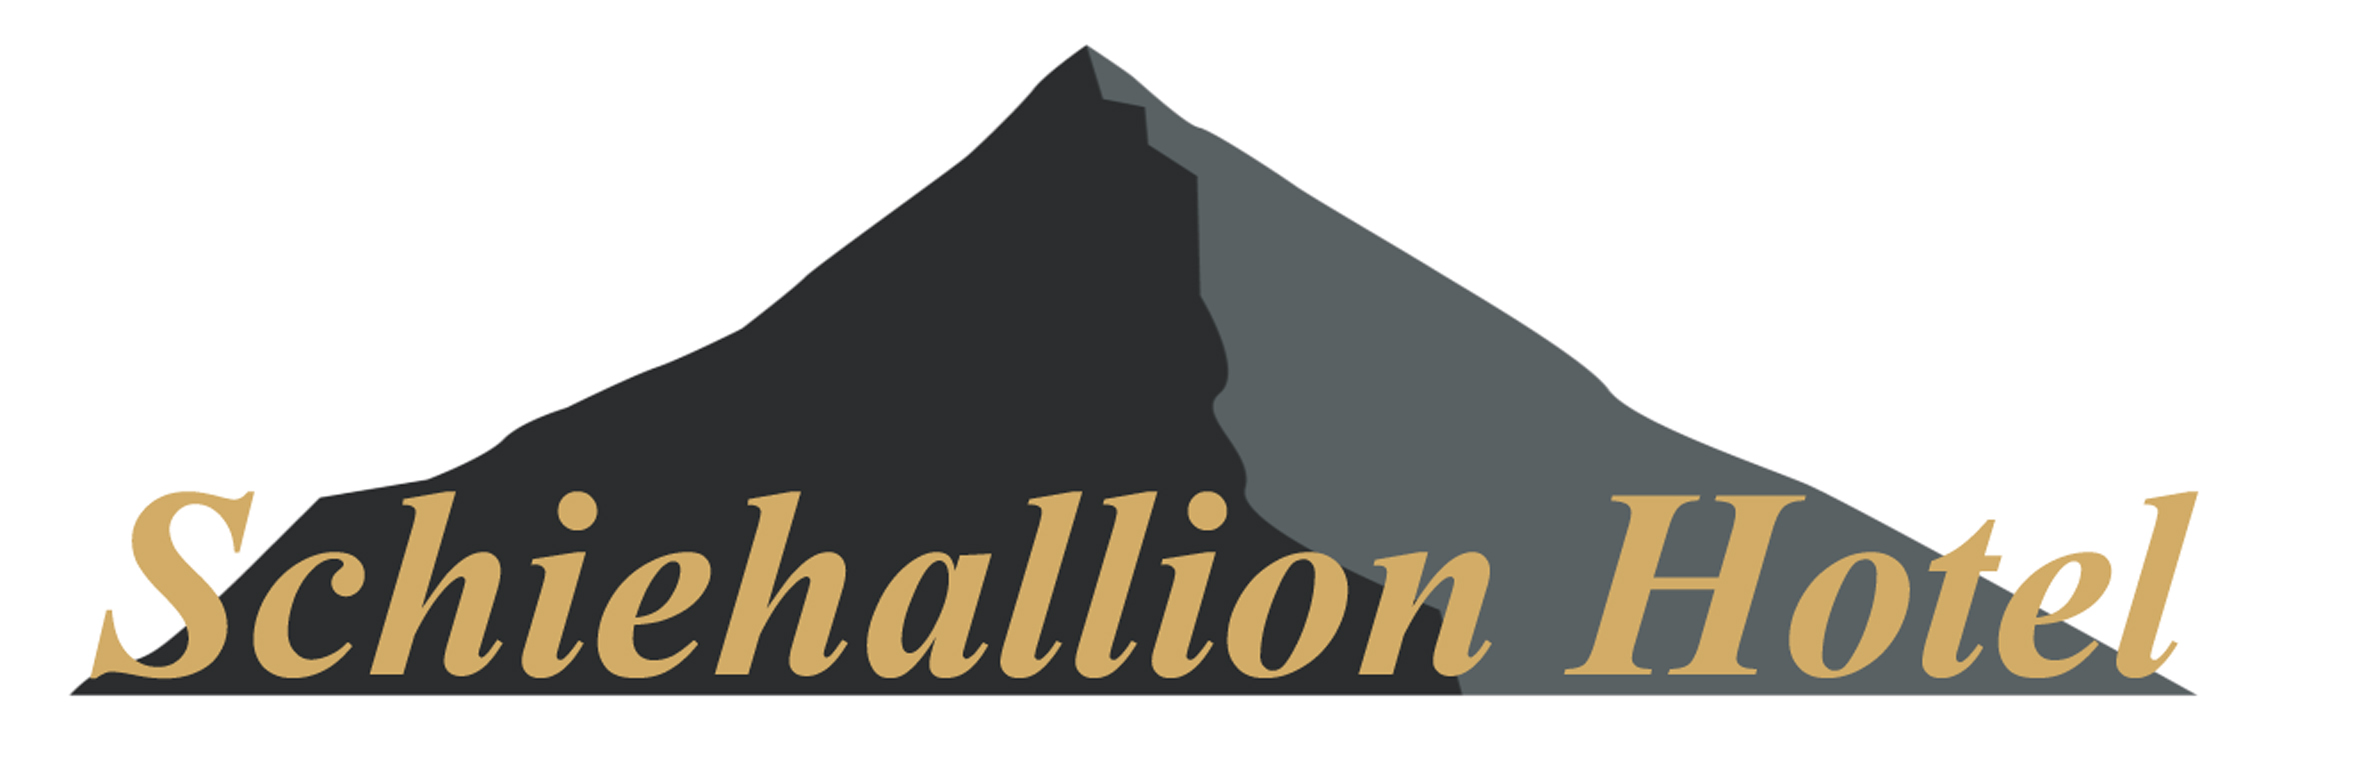 logo for Schiehallion Hotel & Bar Limited